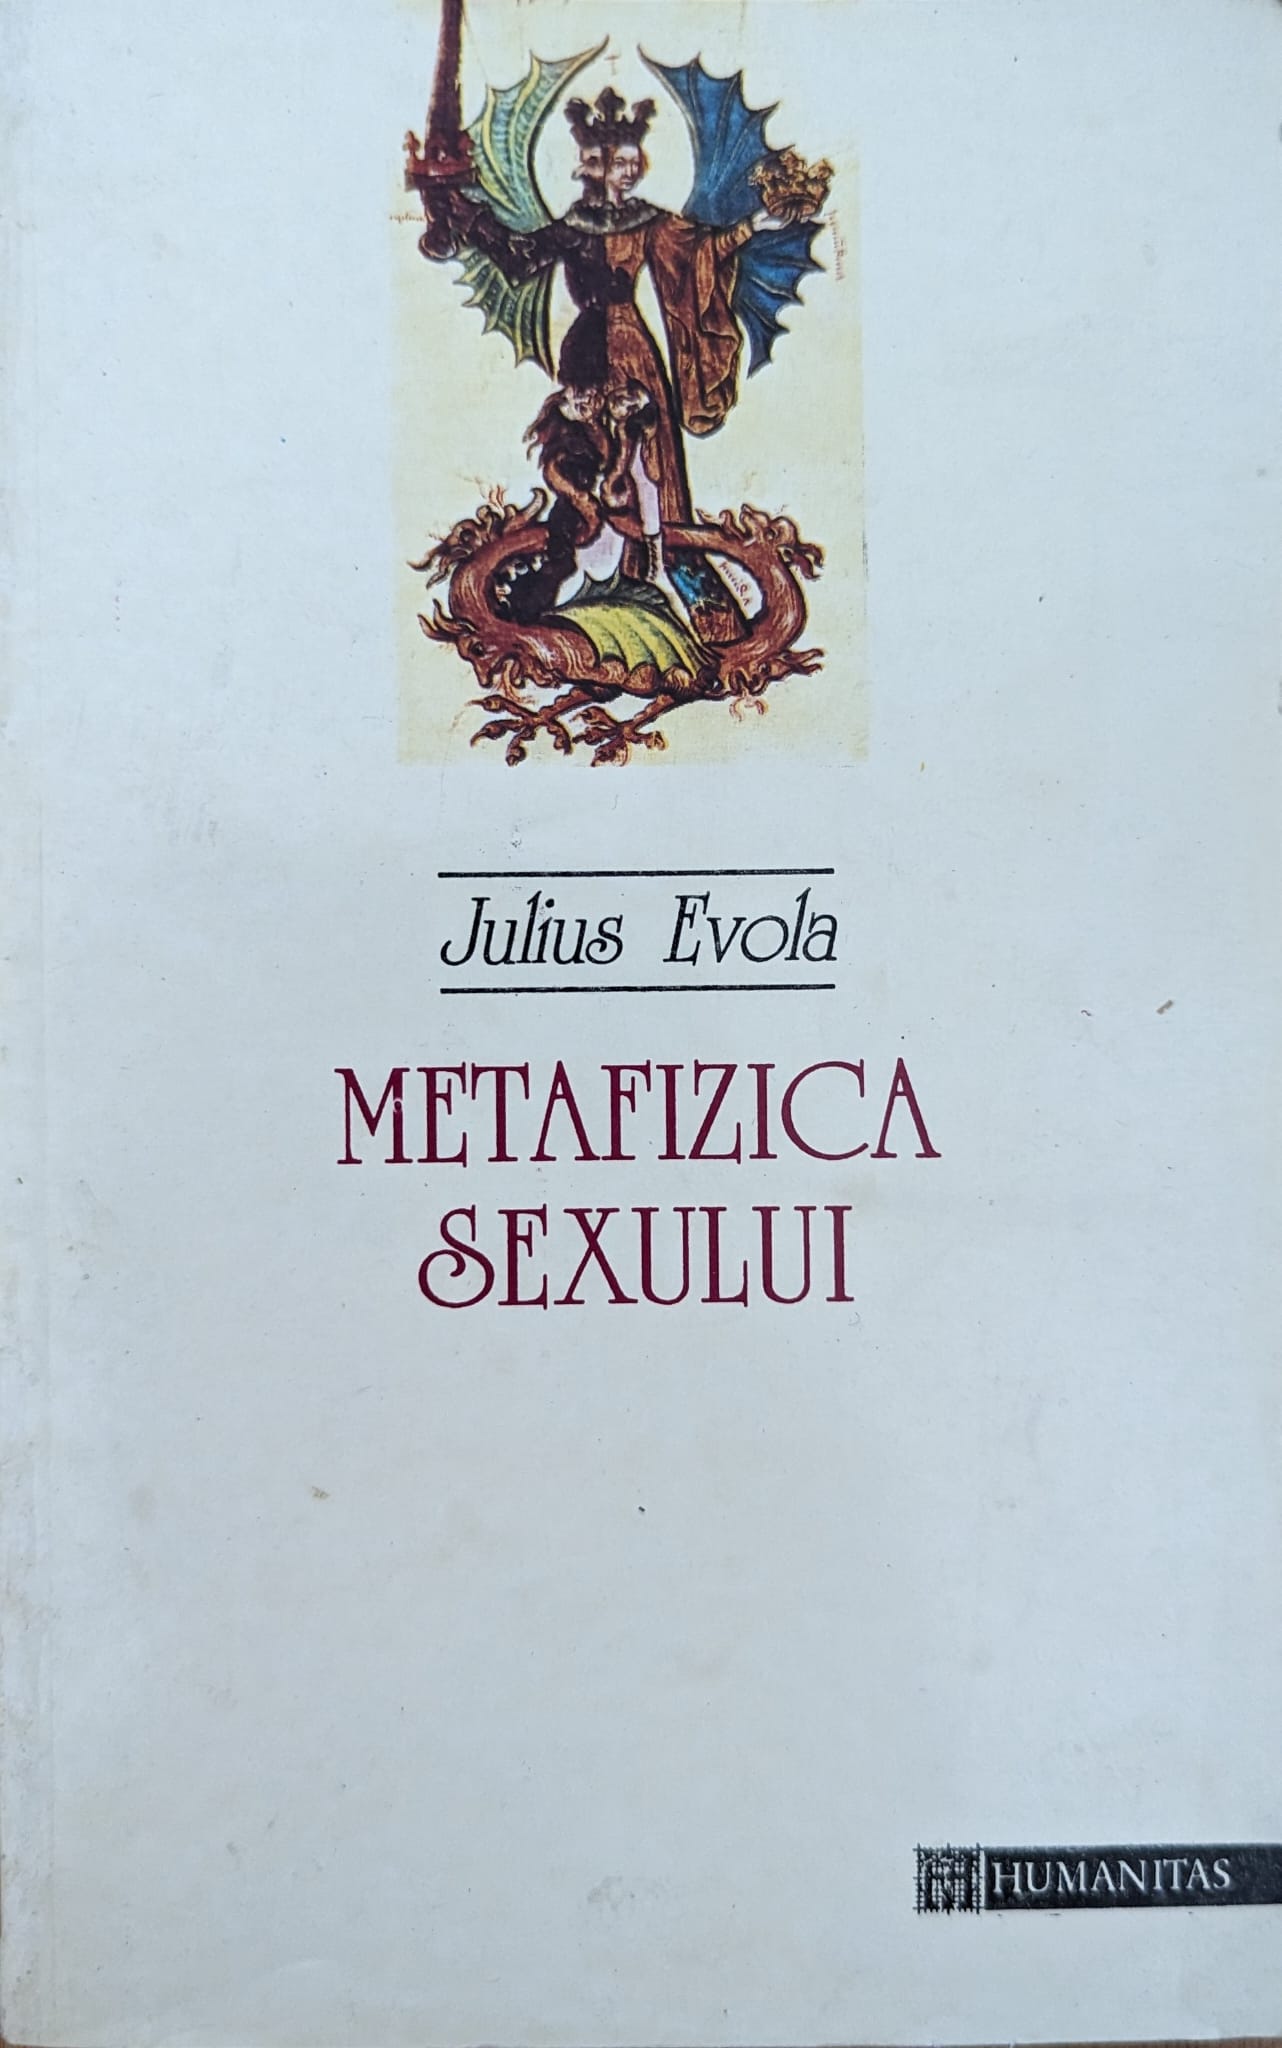 metafizica sexului                                                                                   julius evola                                                                                        